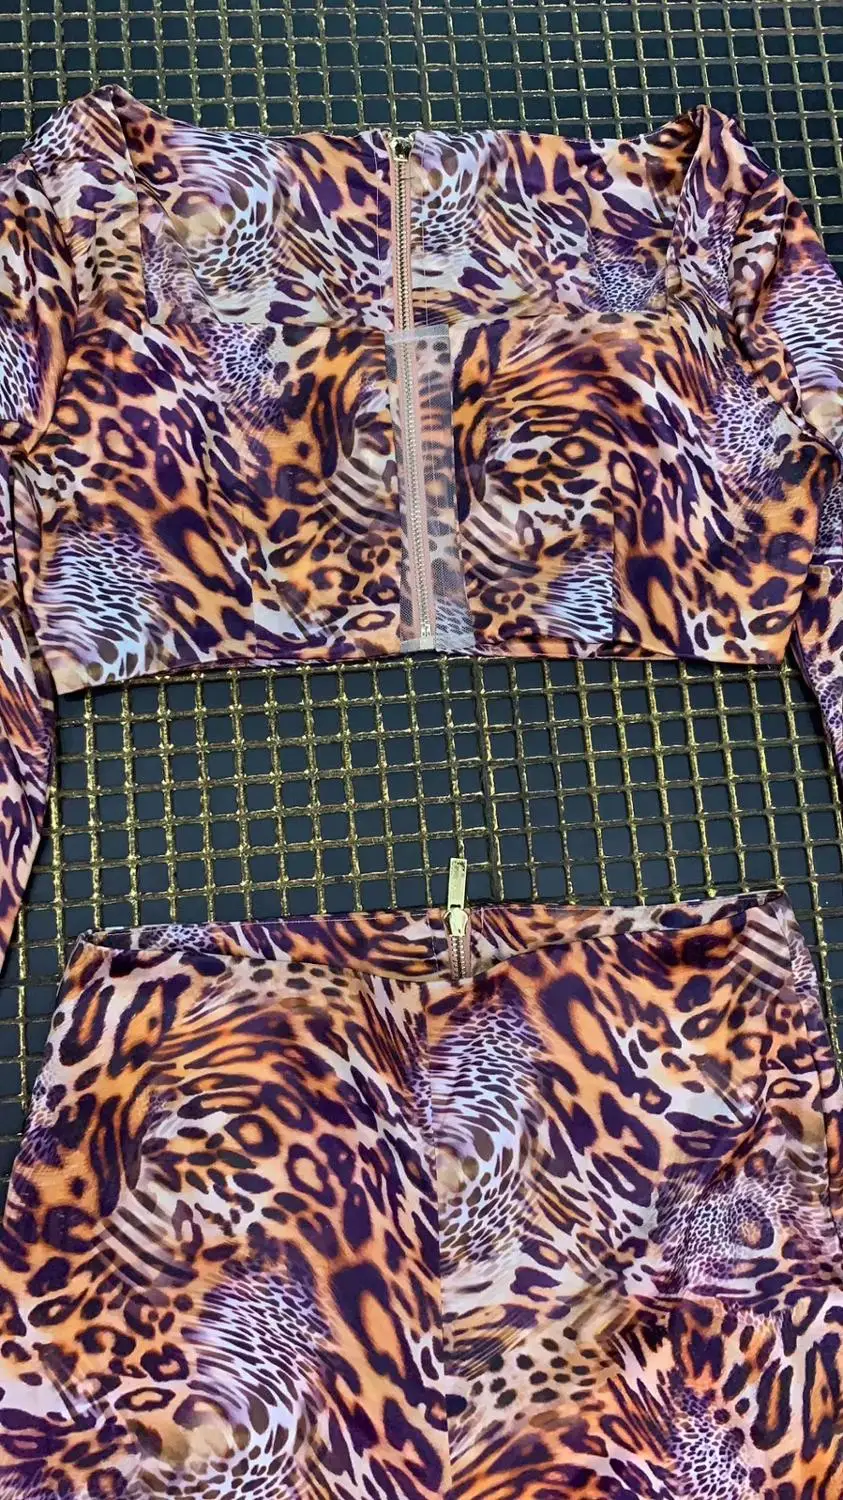 Комплект с леопардовым принтом, с длинными рукавами, винтажный, клубный, одежда для коктейльной вечеринки от AliExpress RU&CIS NEW